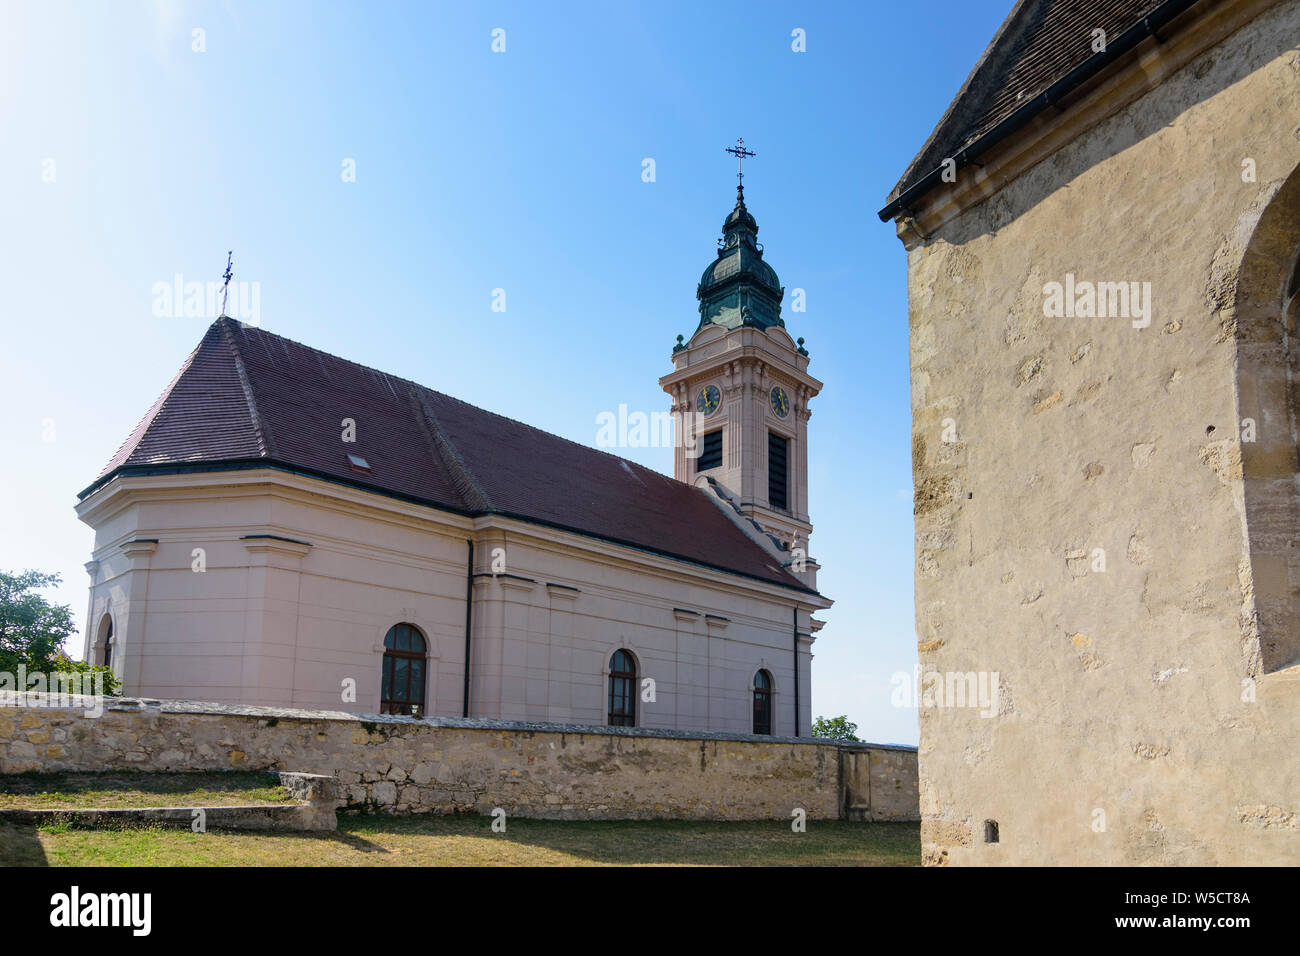 Ruggine: protestante chiesa parrocchiale di Neusiedler See (lago di Neusiedl), Burgenland, Austria Foto Stock